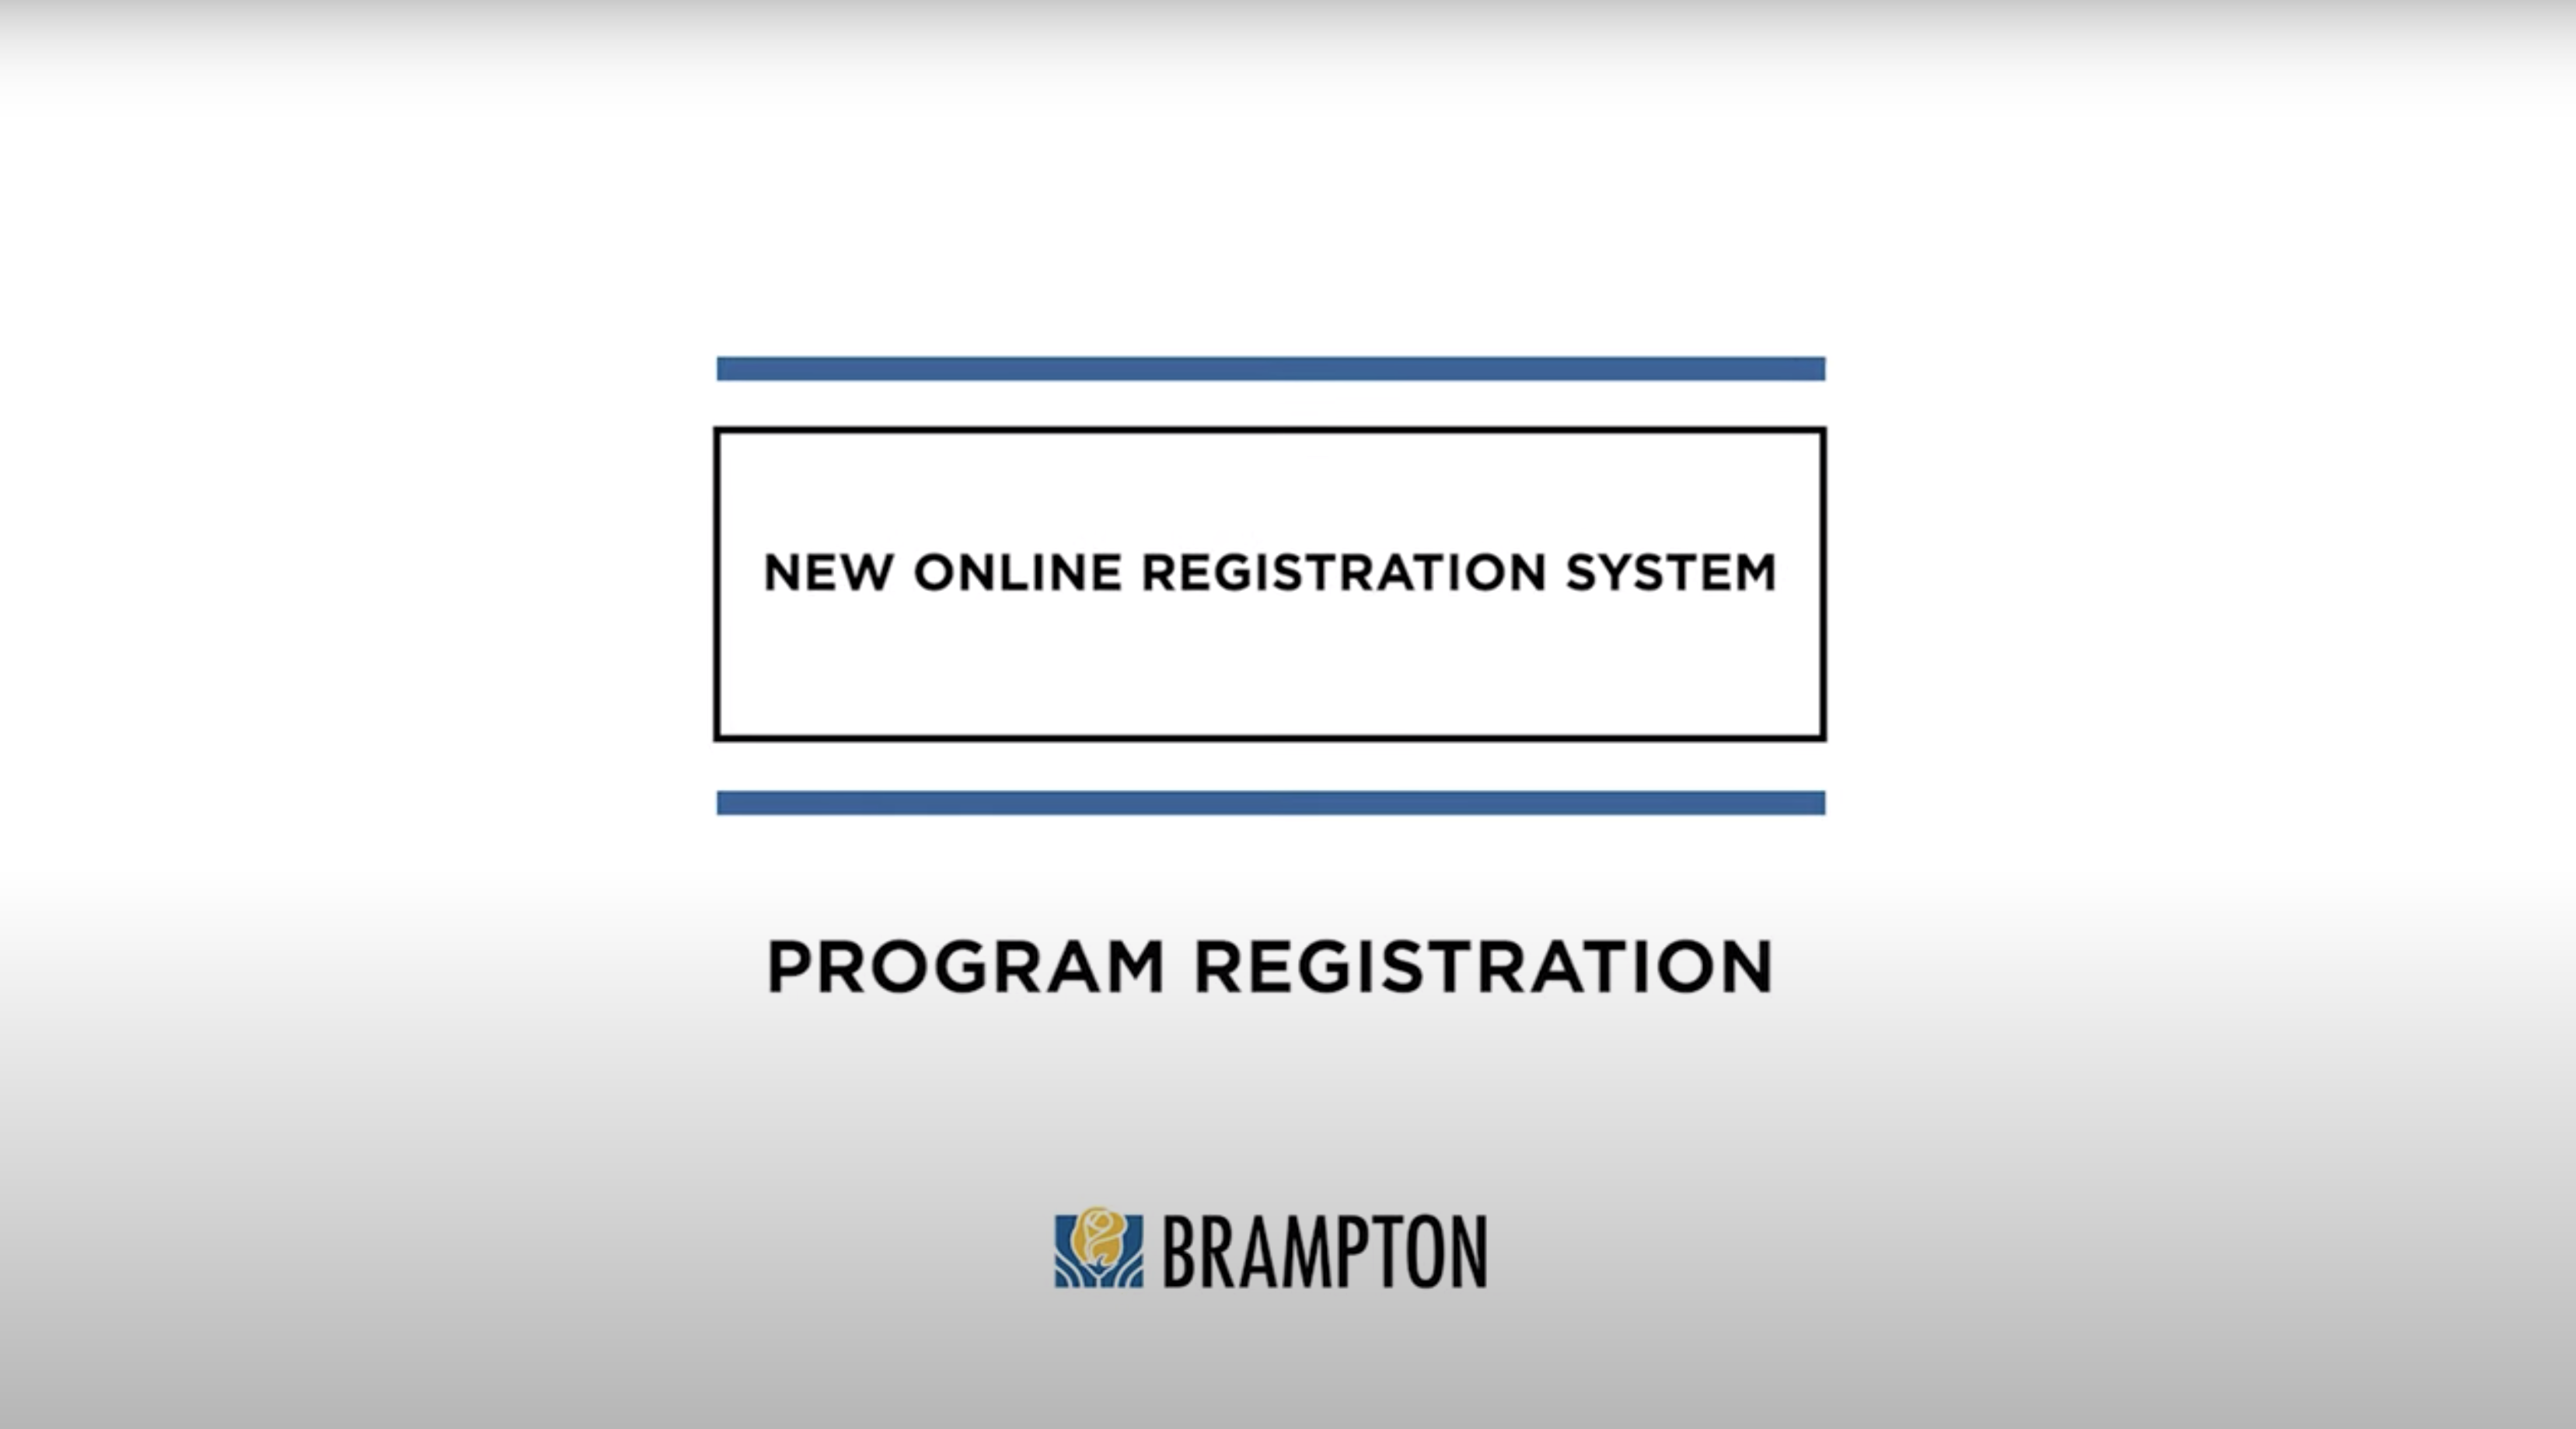 Thumbnail for Program Registration